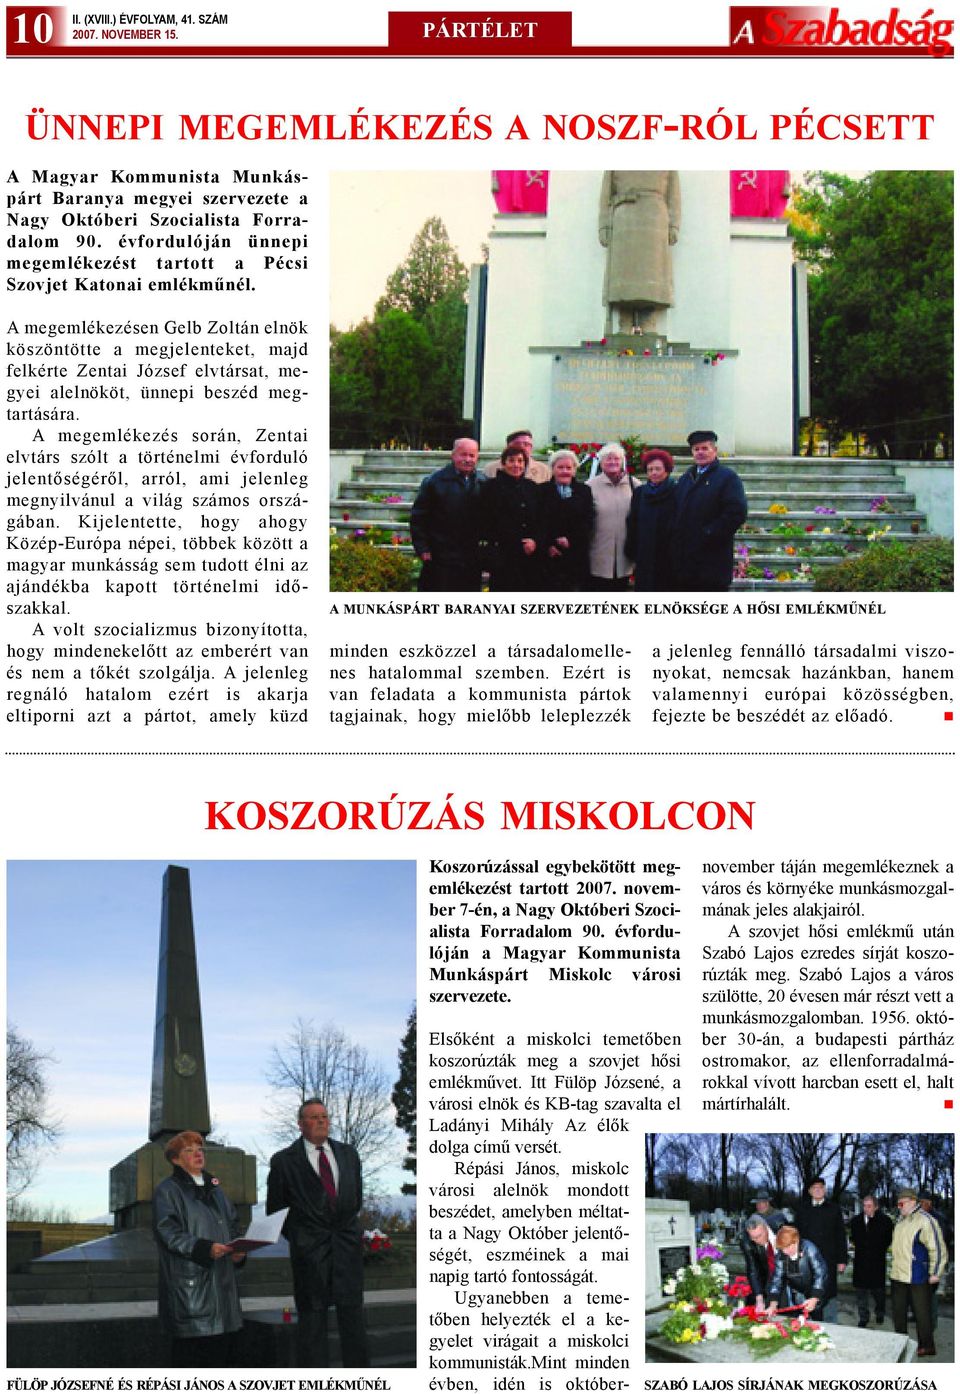 évfordulóján ünnepi megemlékezést tartott a Pécsi Szovjet Katonai emlékmûnél.